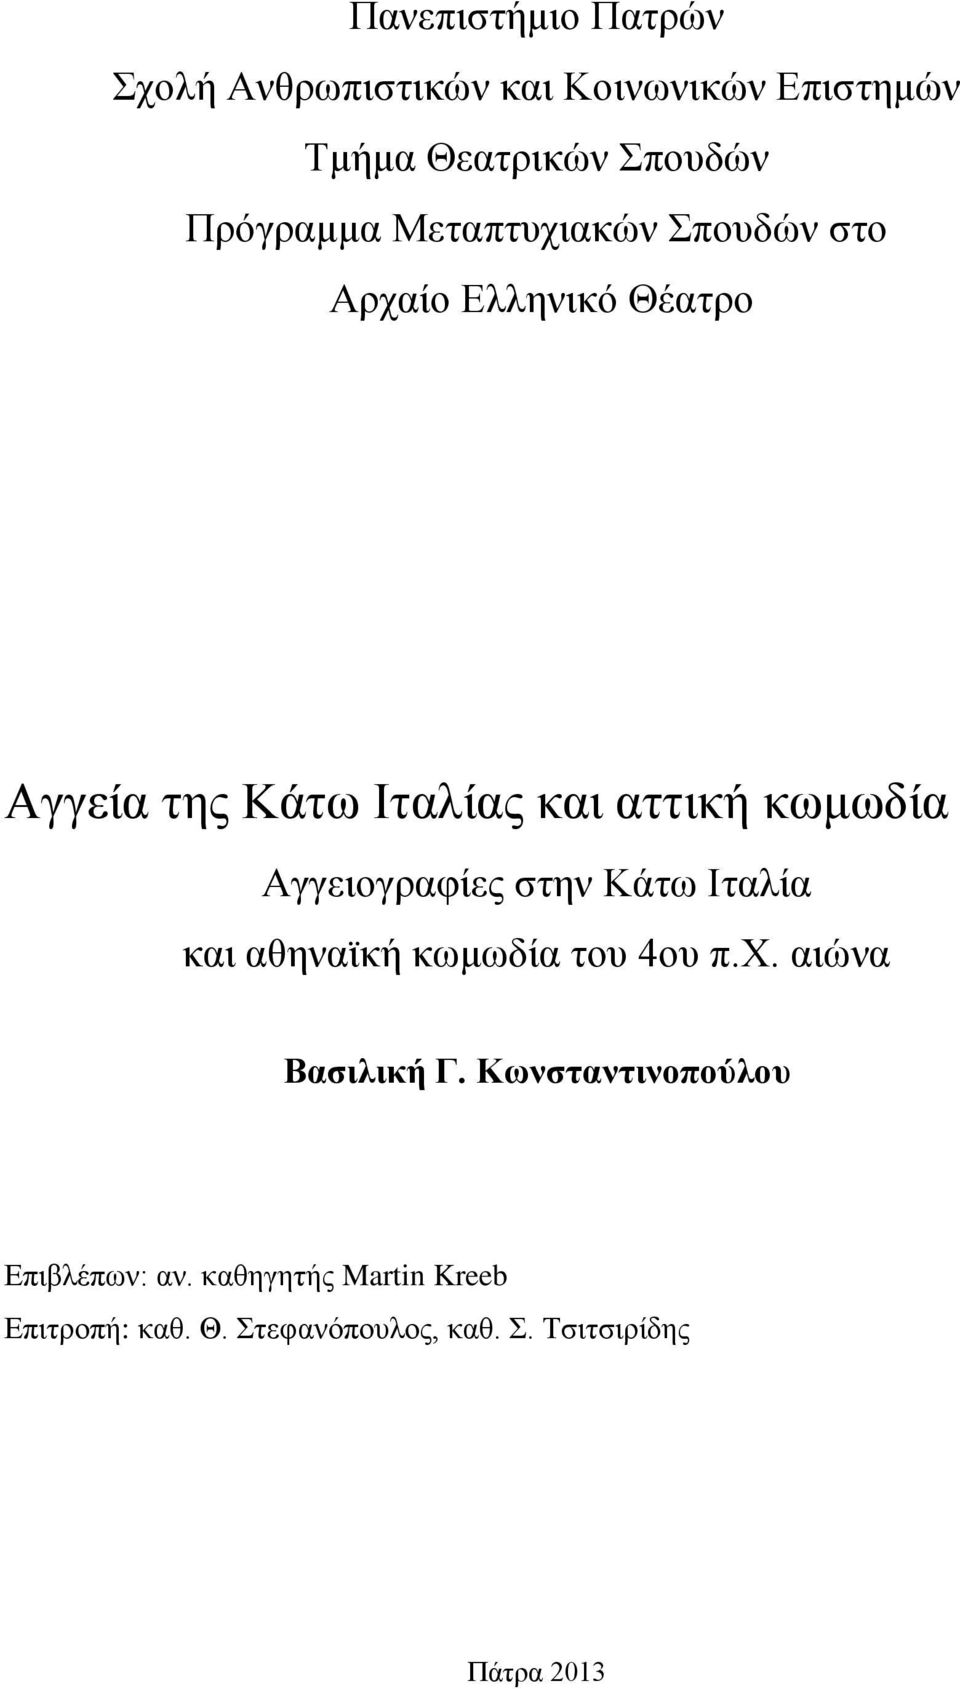 Αγγειογραφίες στην Κάτω Ιταλία και αθηναϊκή κωμωδία του 4ου π.χ. αιώνα Βασιλική Γ.